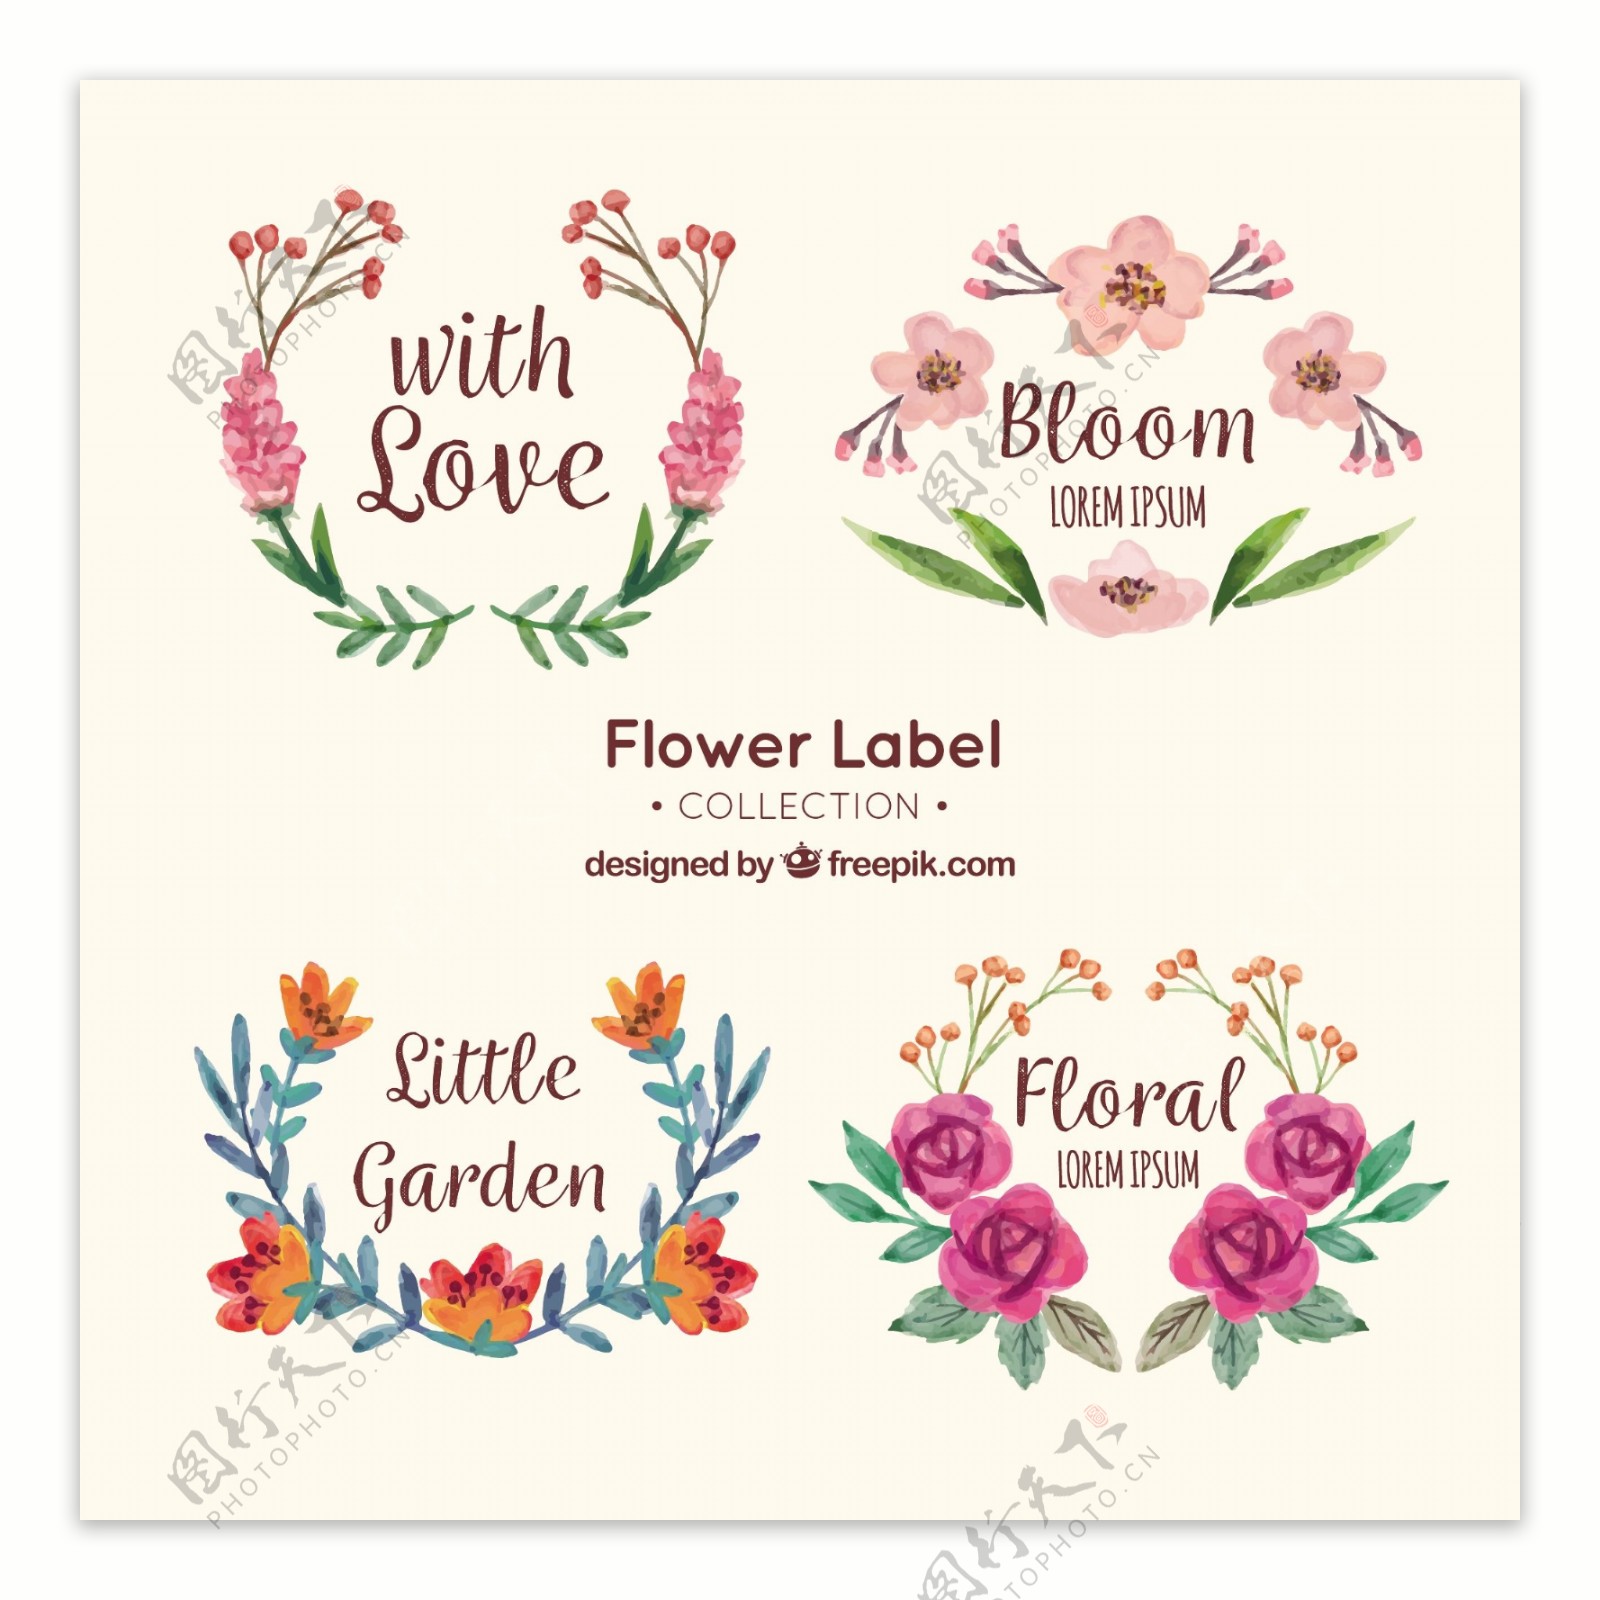 手绘水彩风格花卉标签图标